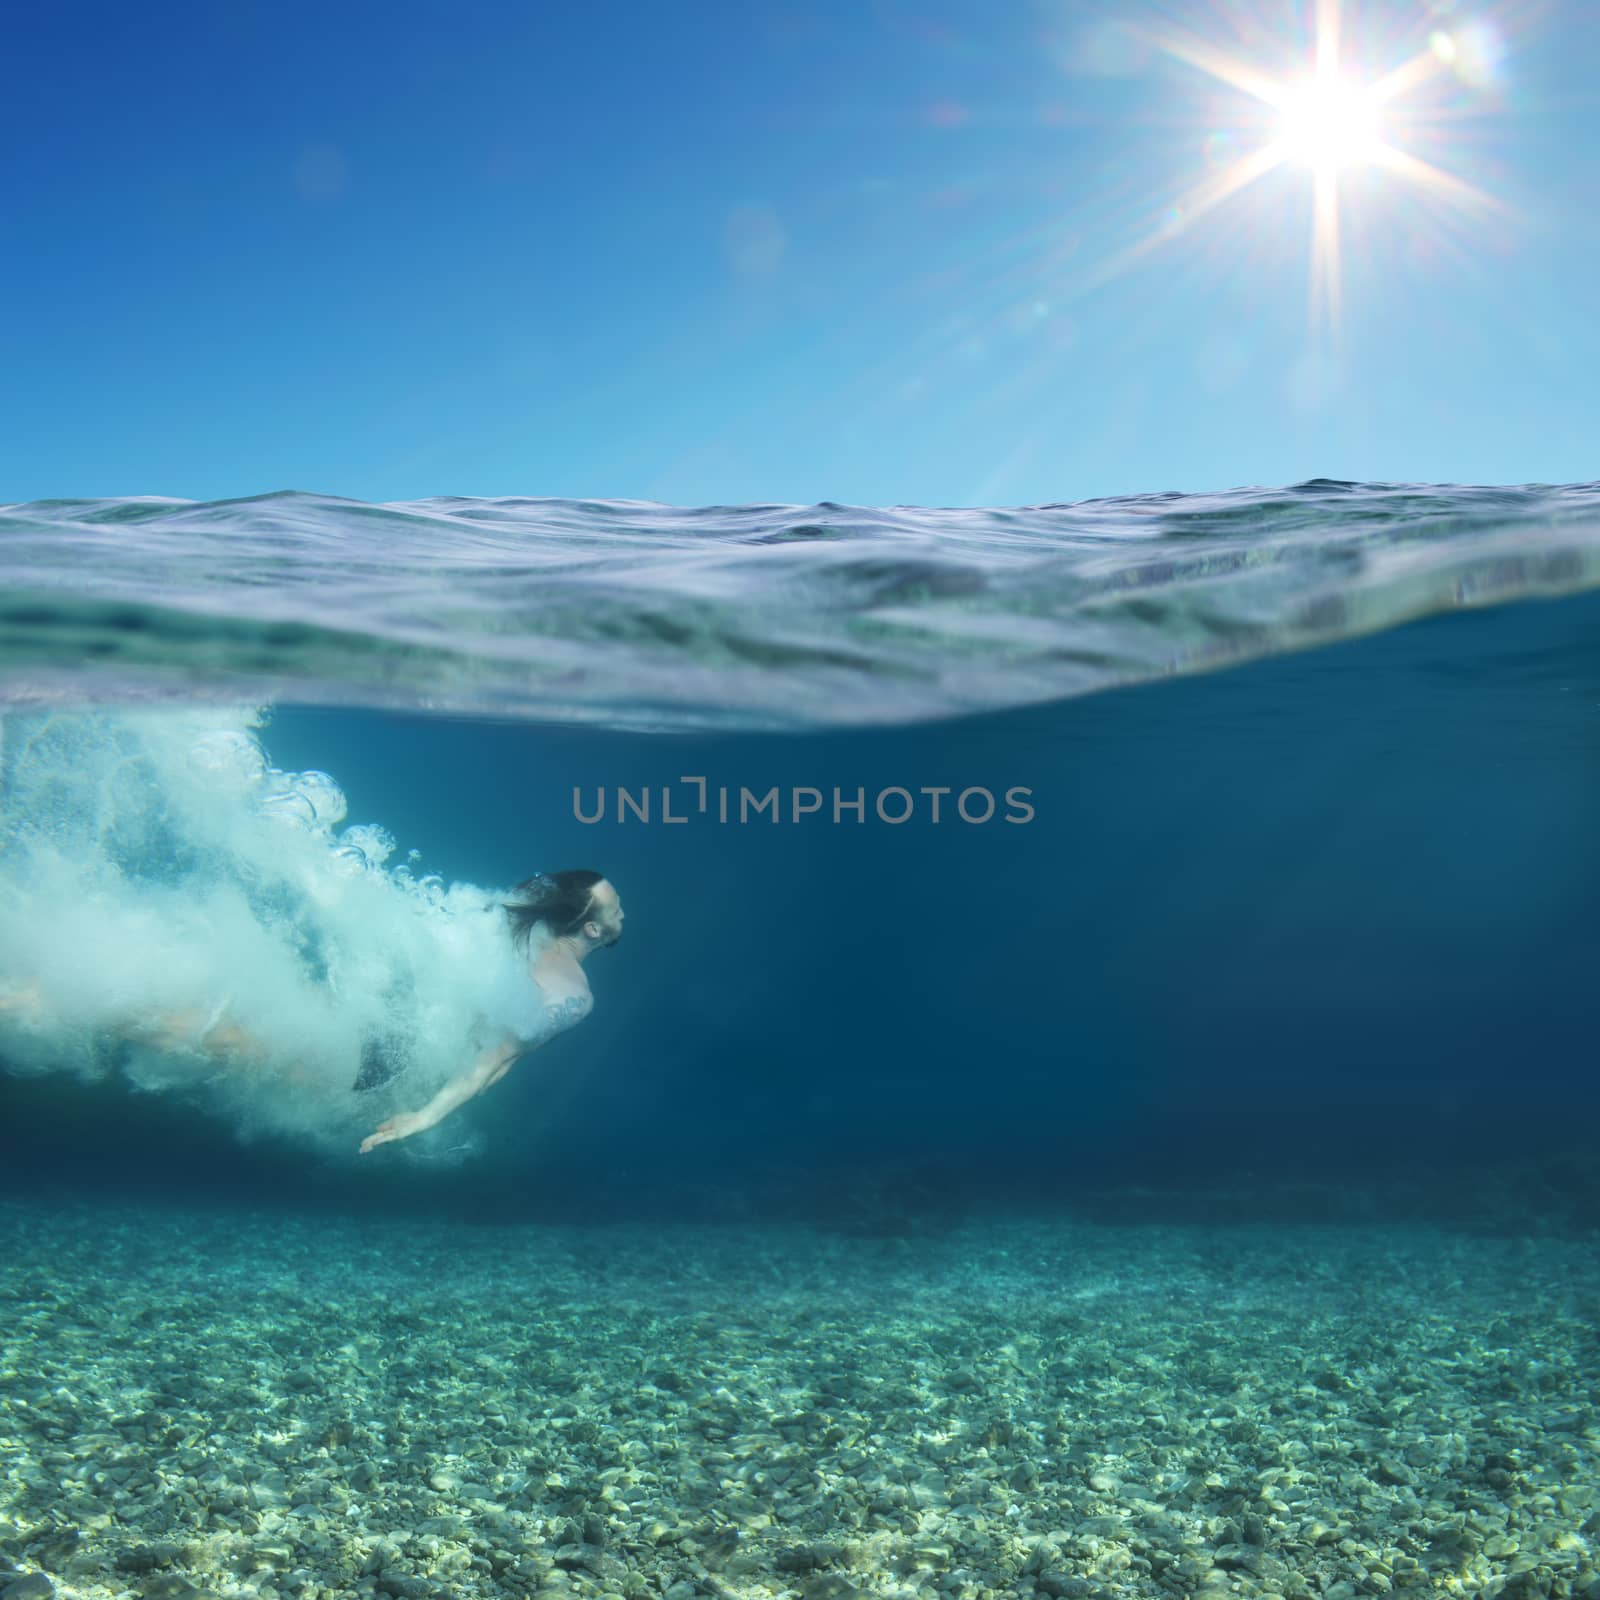 Man swimming underwater by destillat